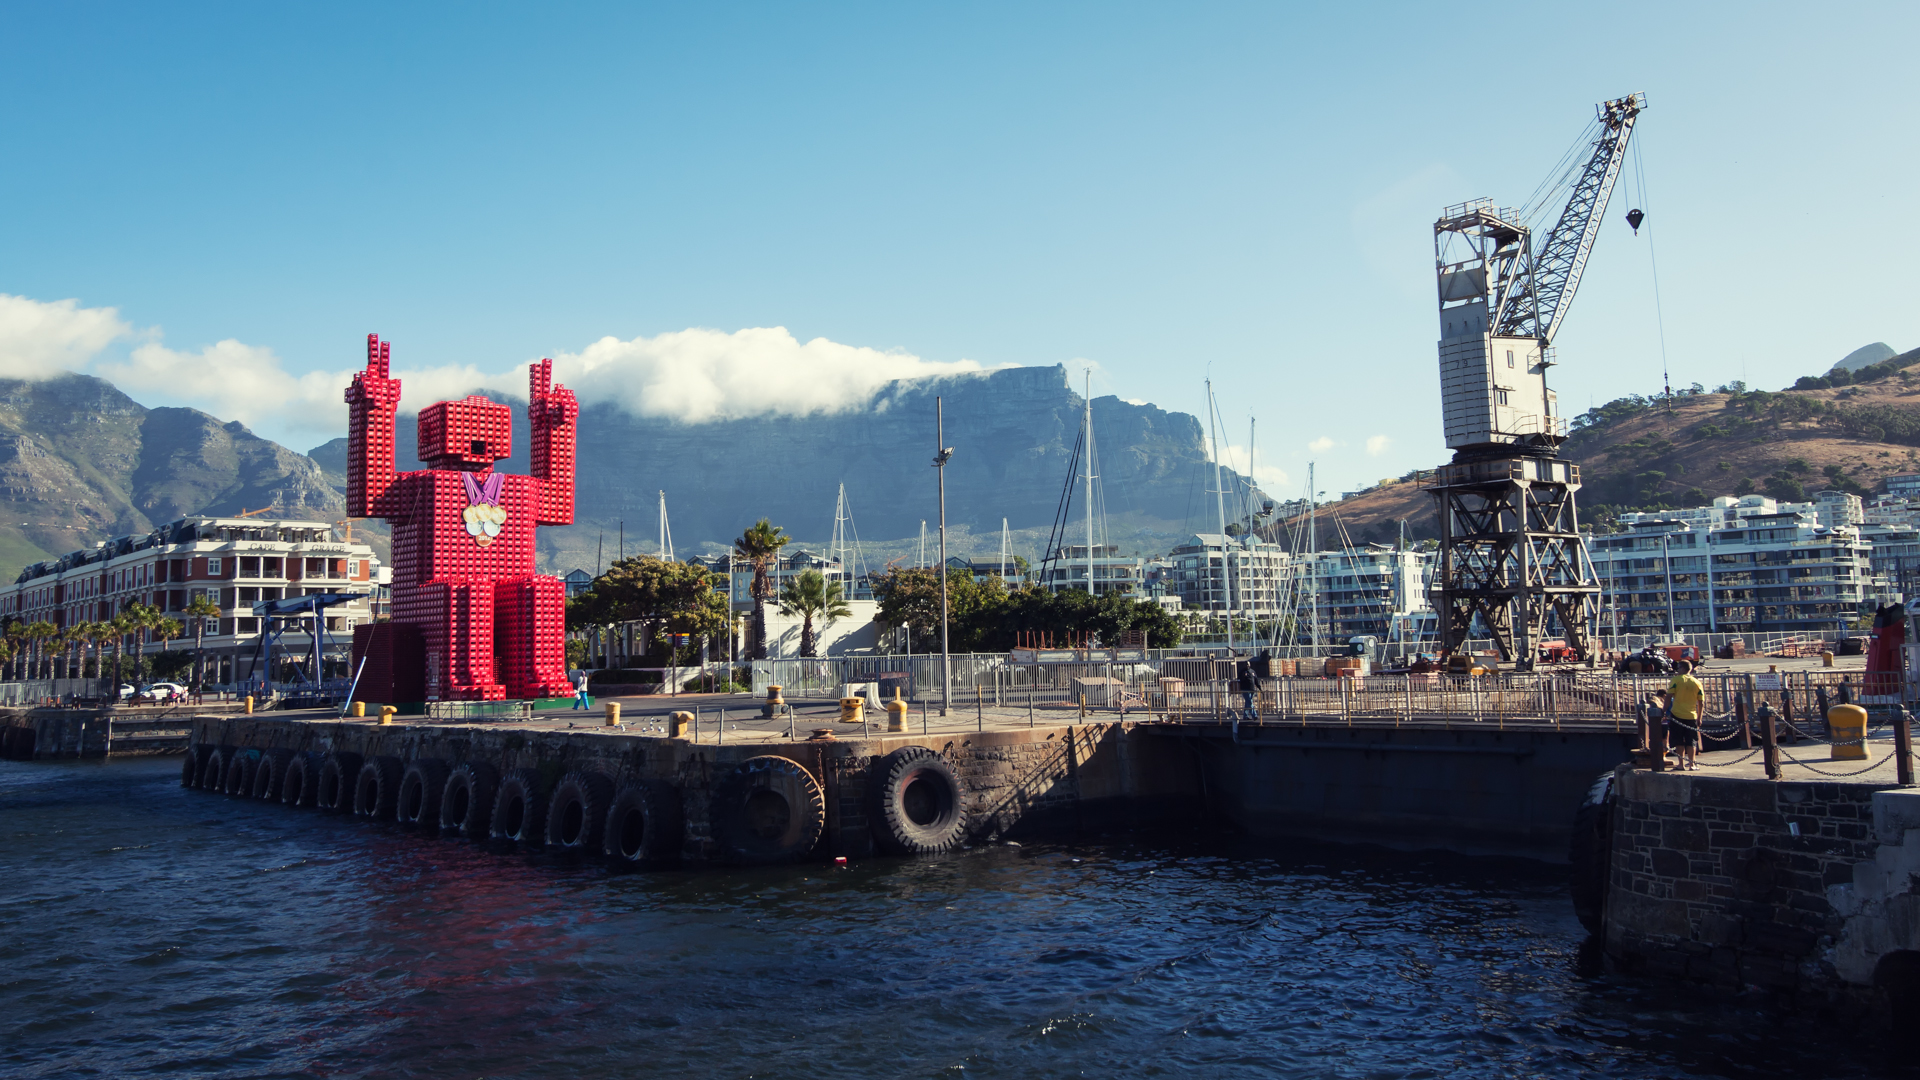 Capetown Docks